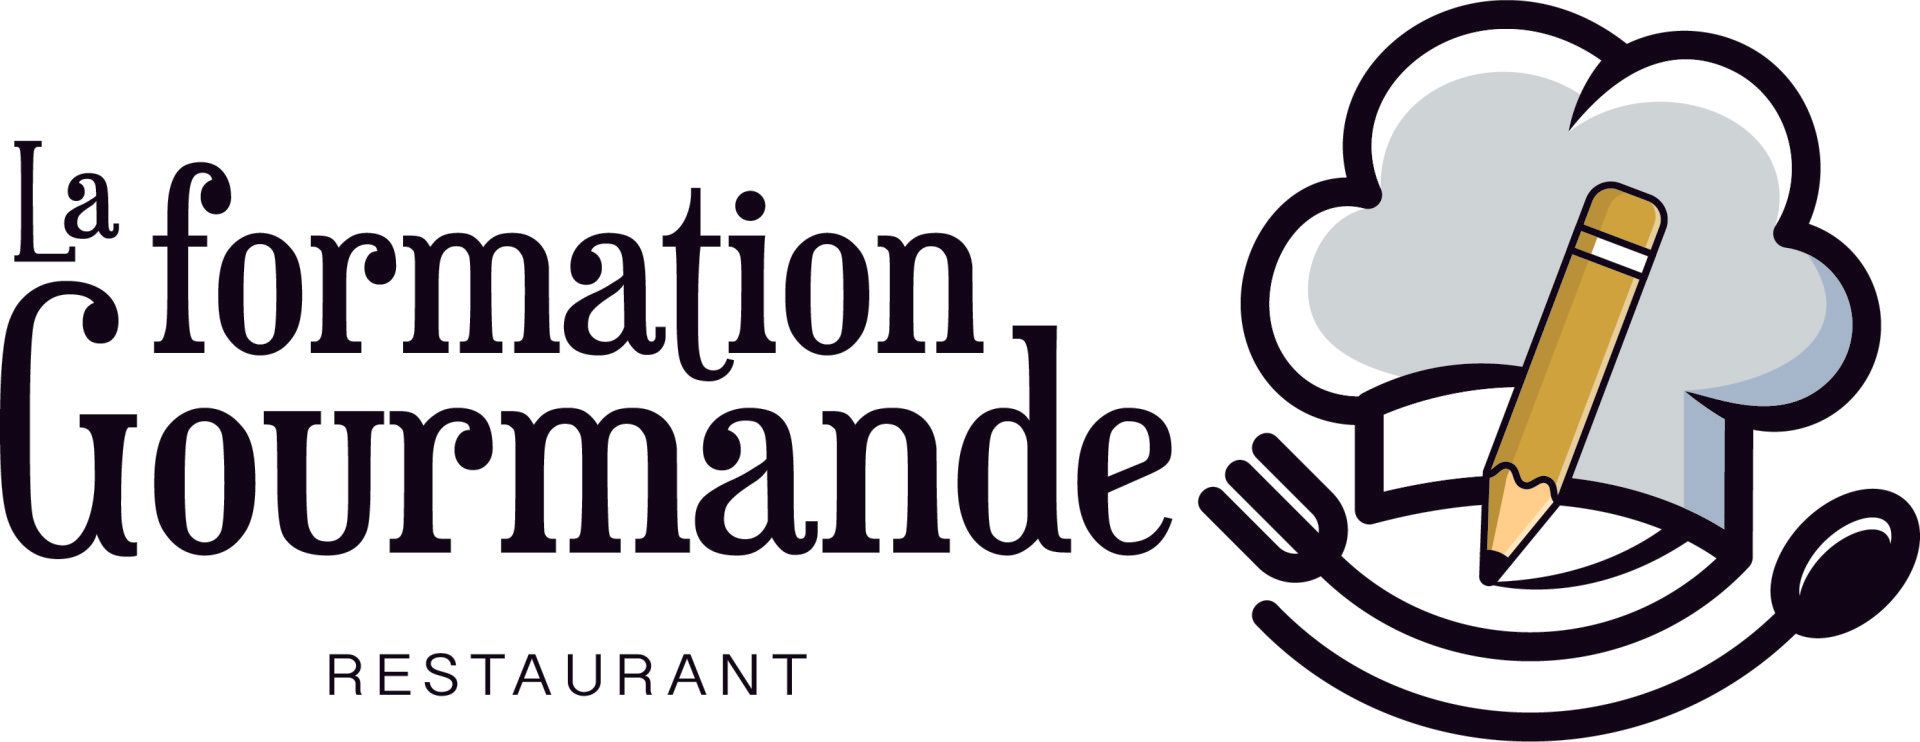 La-formation-gourmande-logo